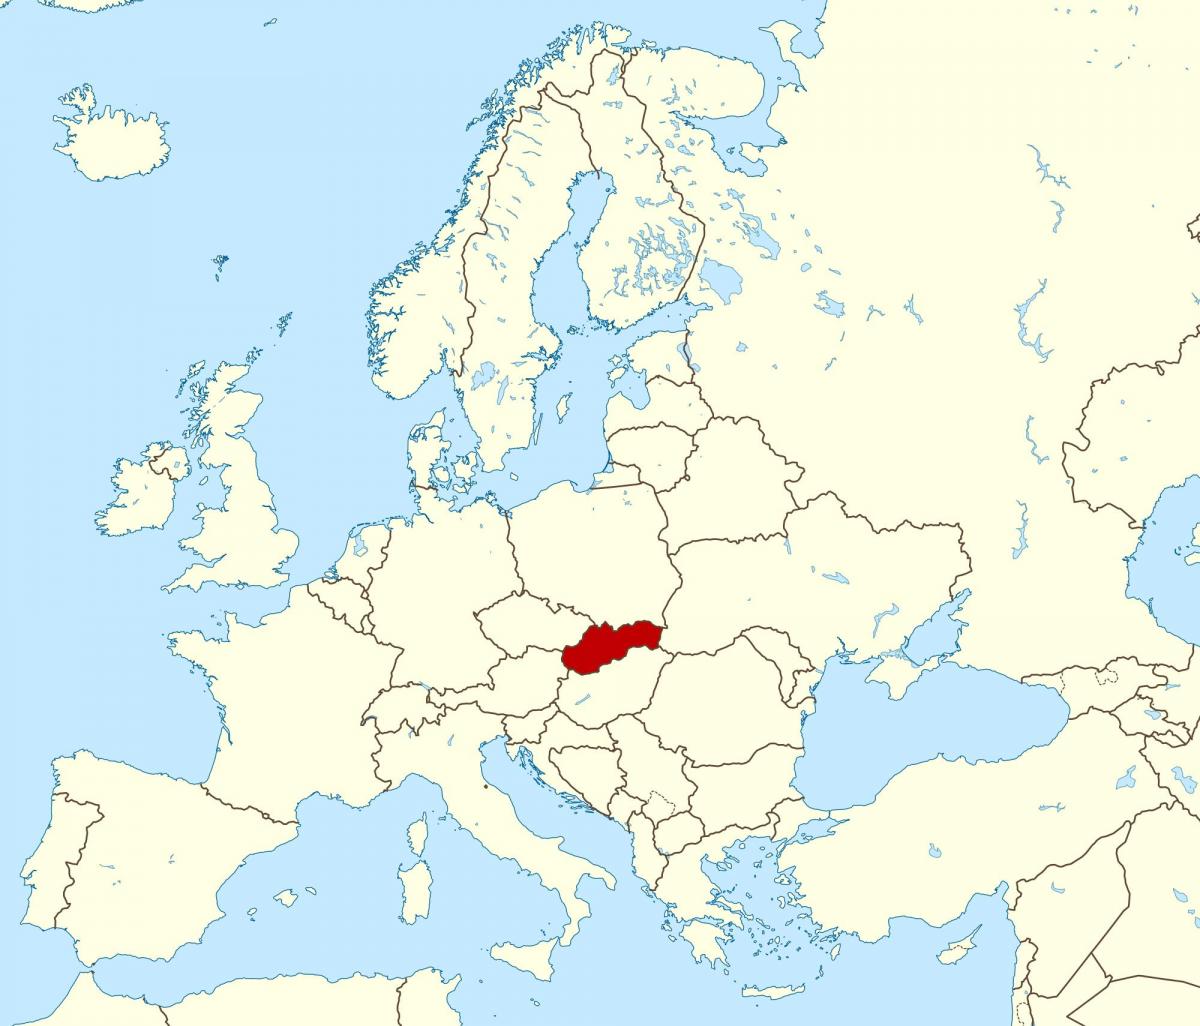 خريطة سلوفاكيا خريطة أوروبا